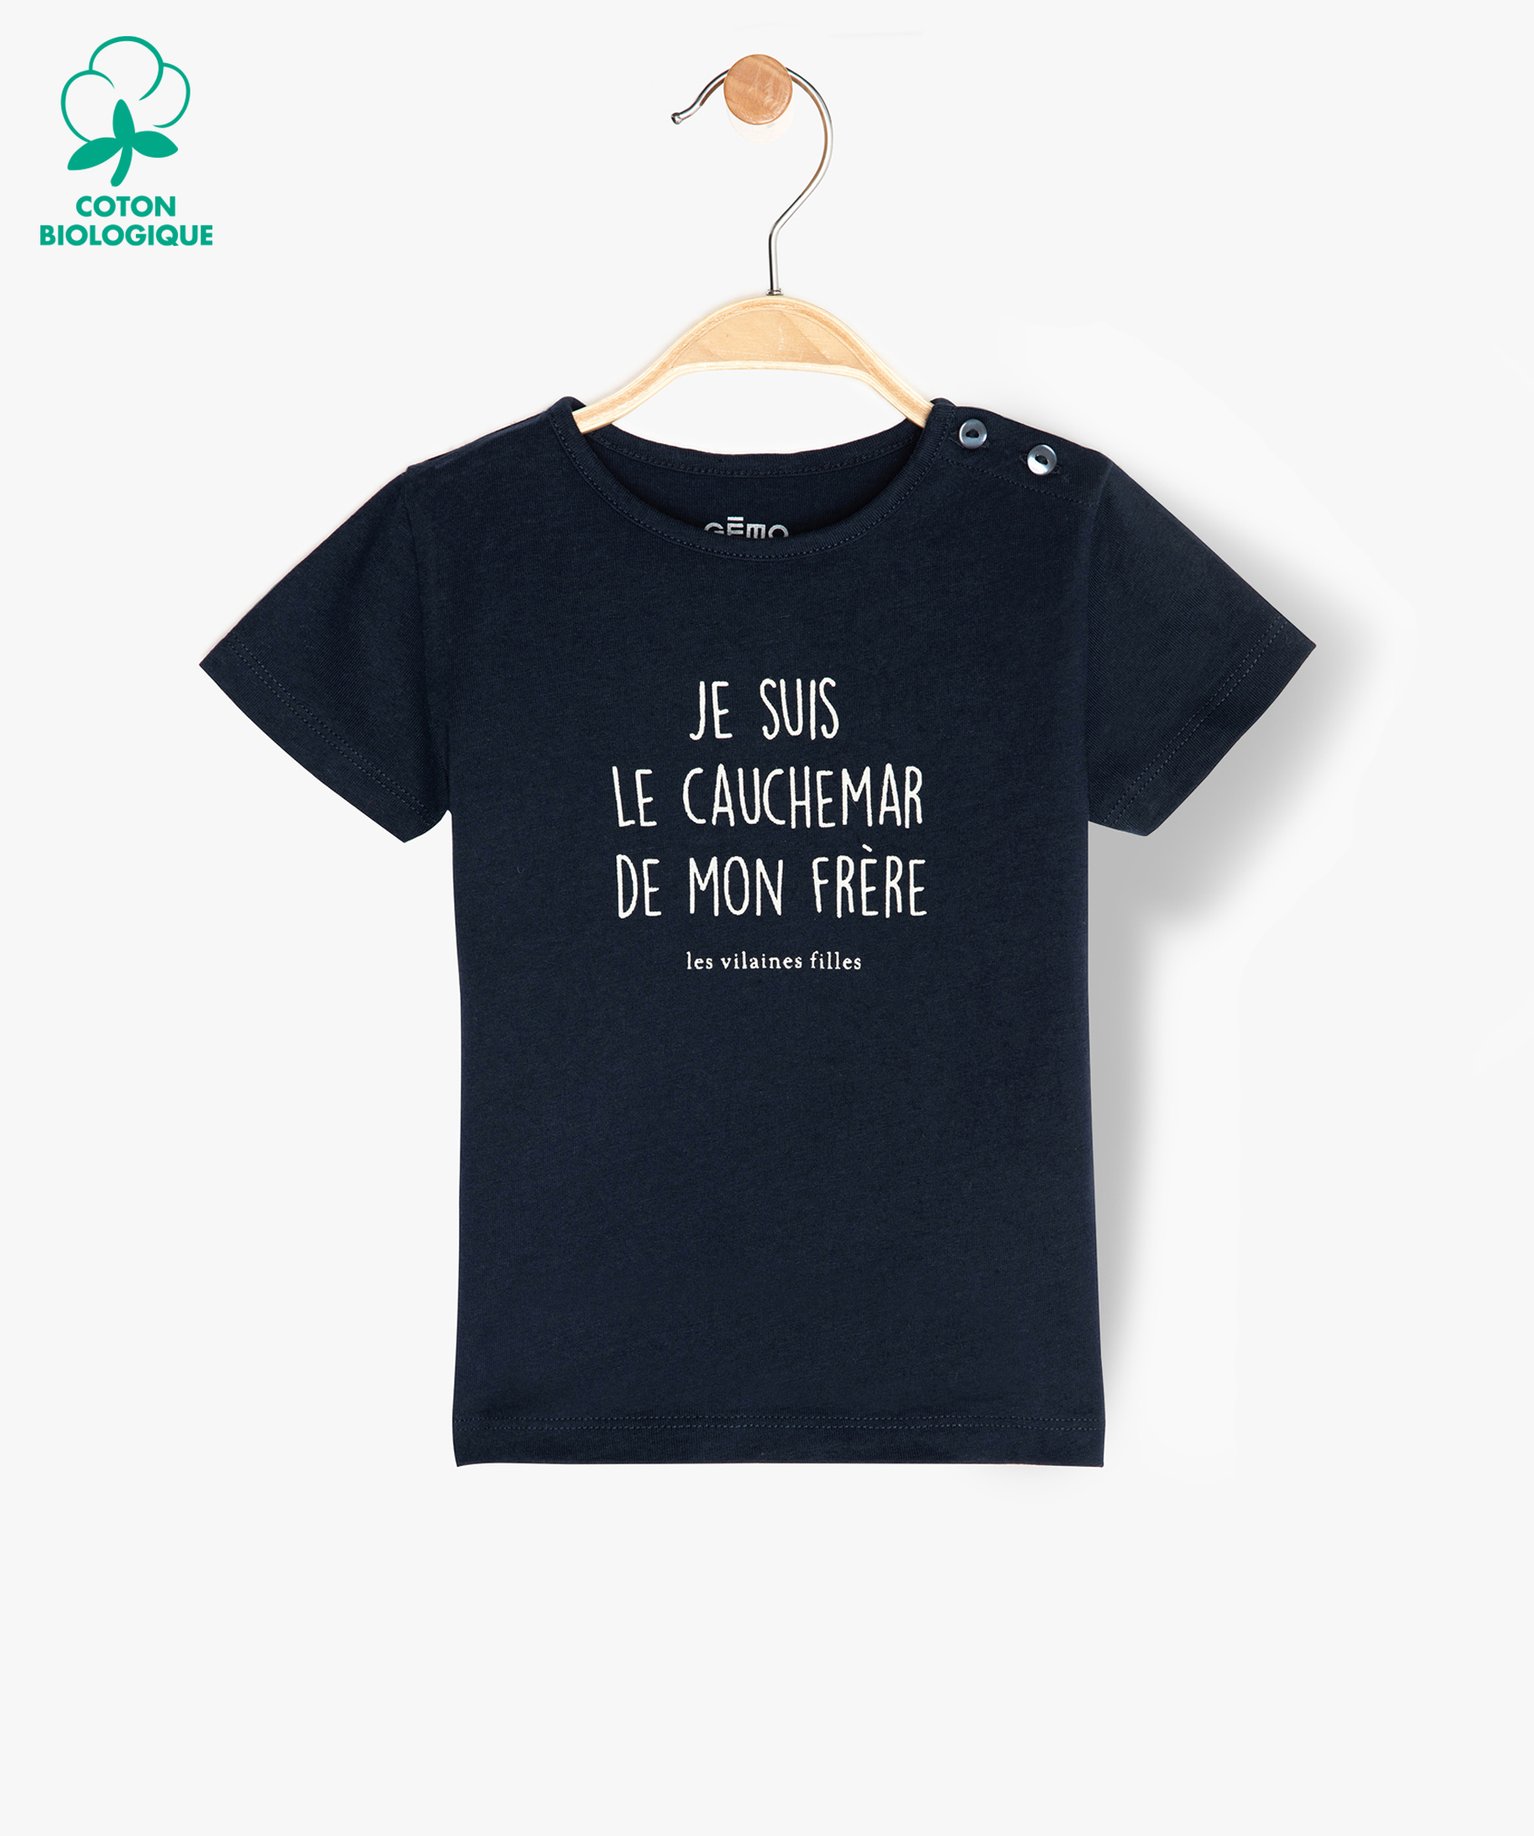 Tee-shirt bébé fille à message humoristique - GEMO x Les Vilaines filles